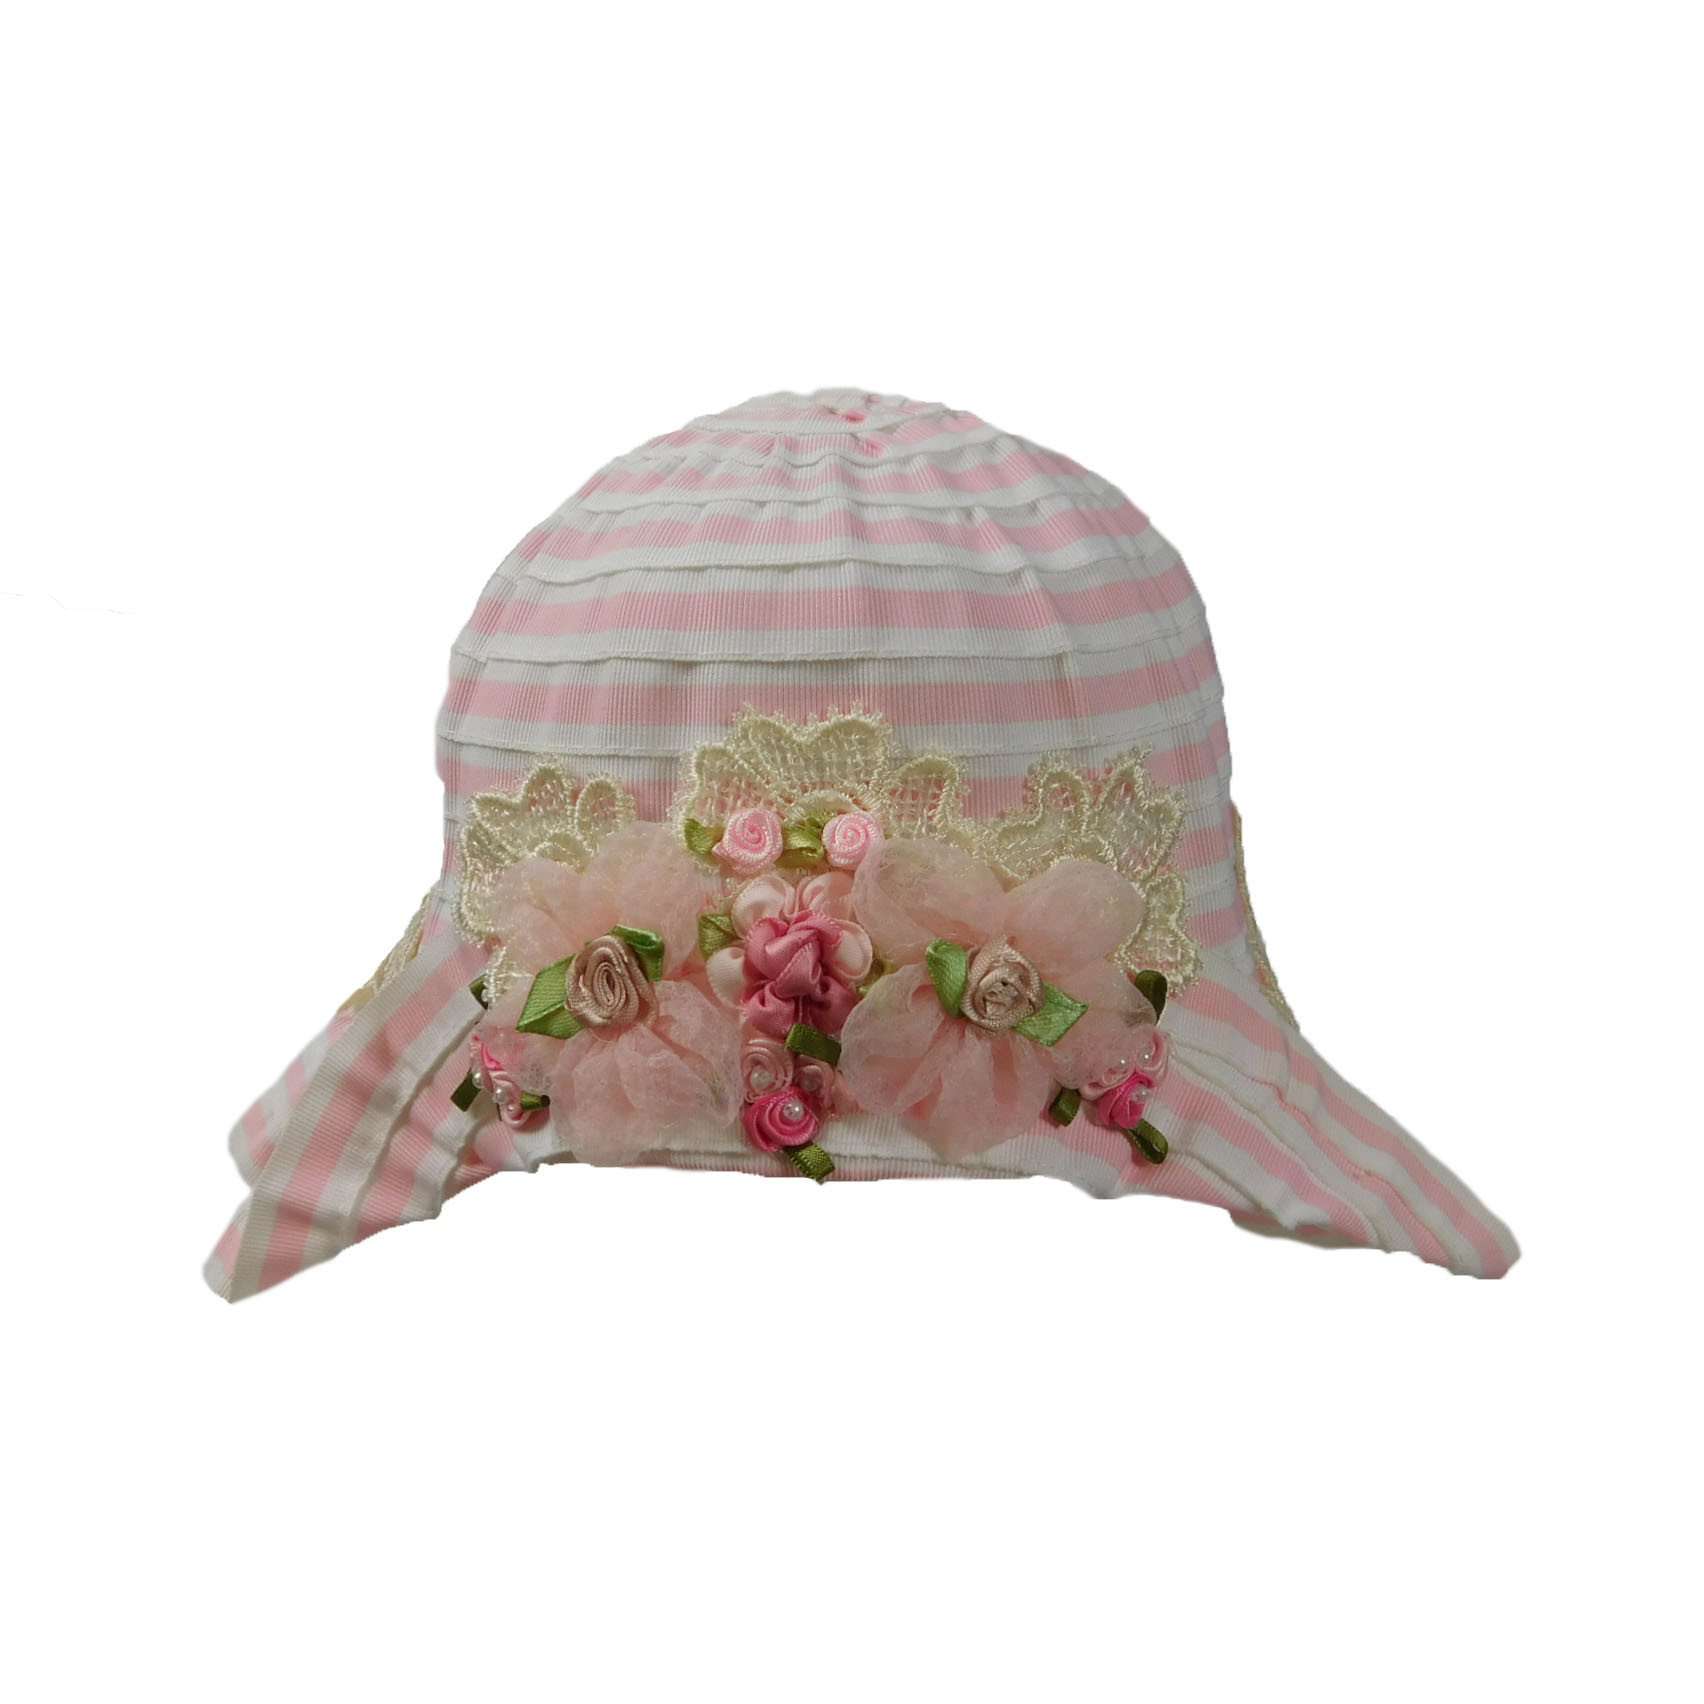 Vintage Summer Hat for Girls, Bucket Hat - SetarTrading Hats 